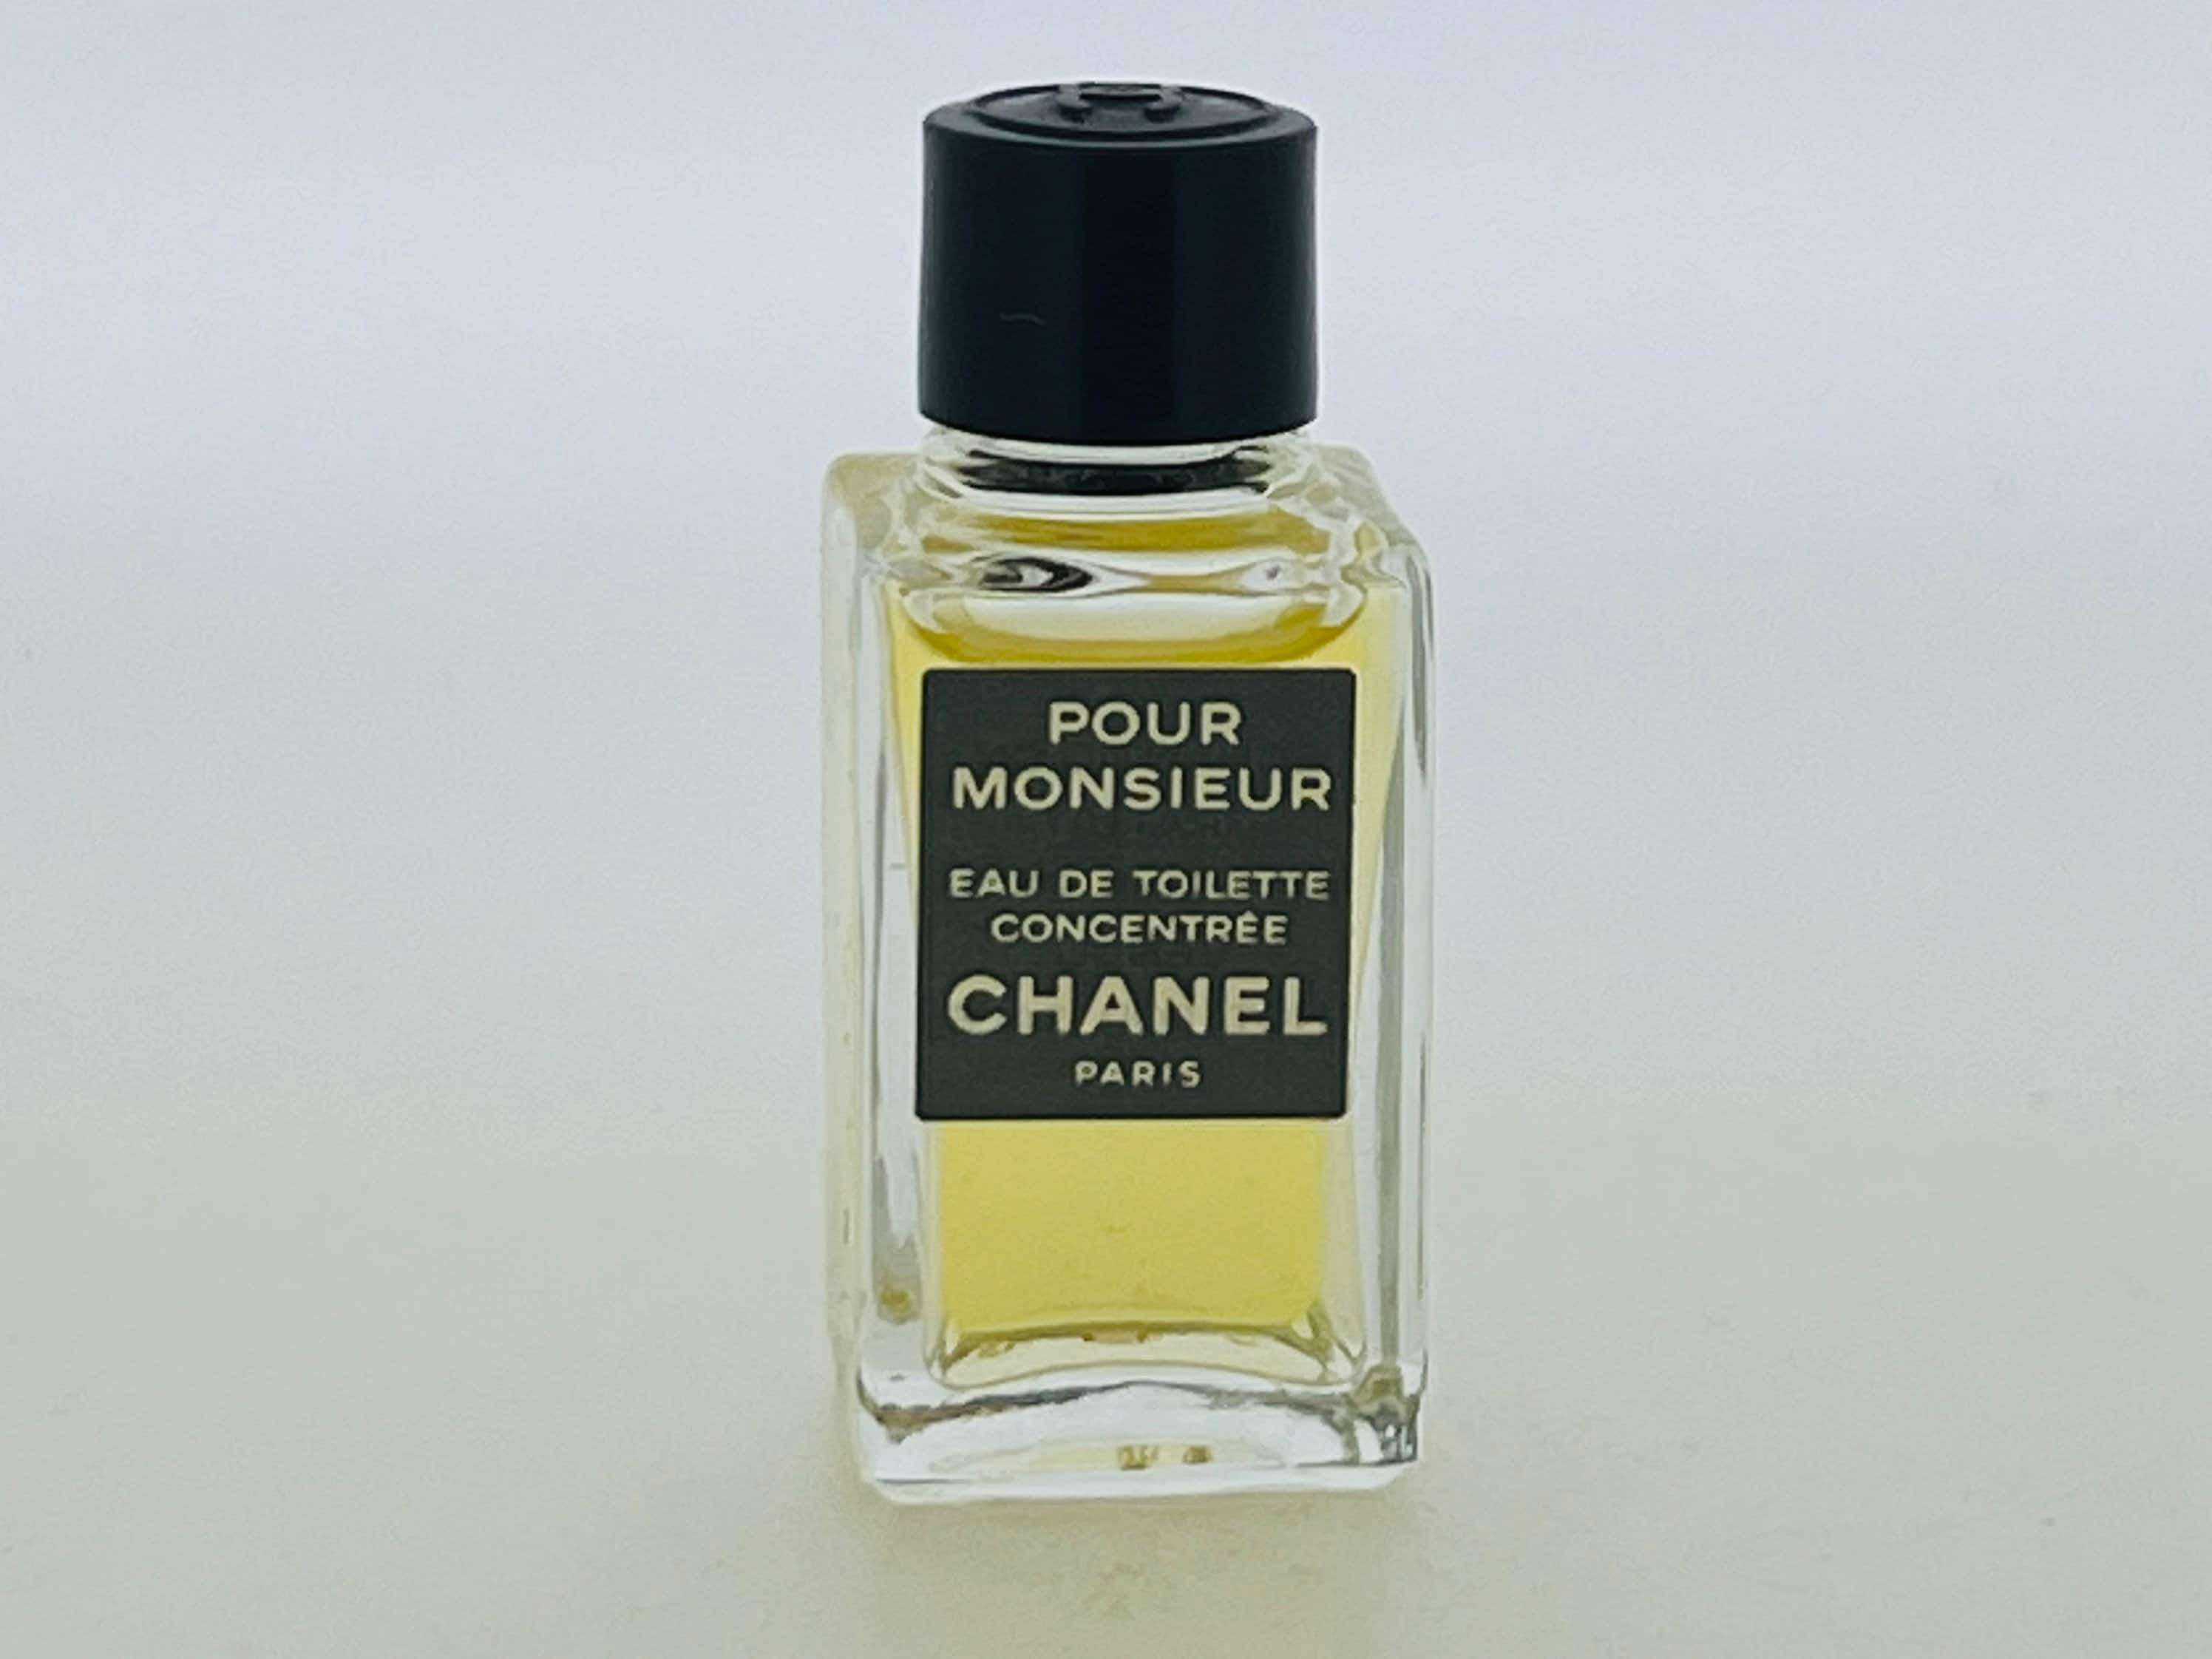 Chanel POUR MONSIEUR Concentree 75 ml/2.5 oz EDT